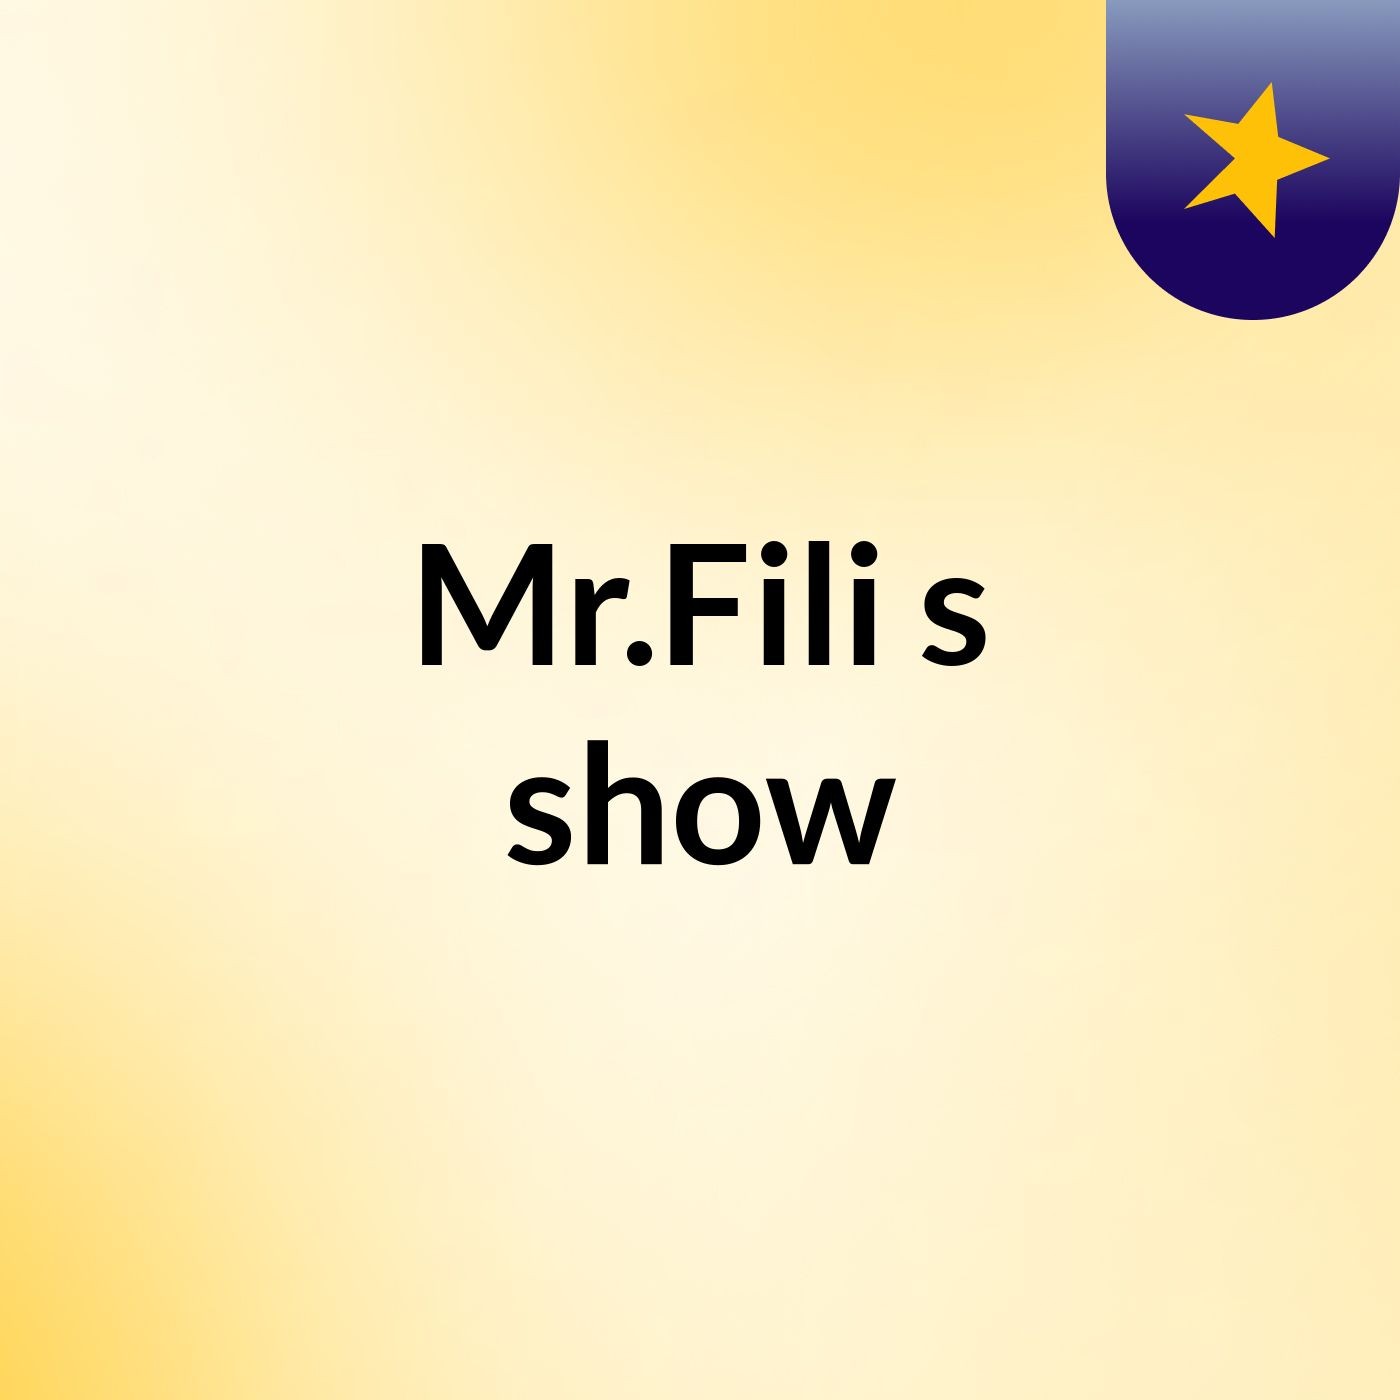 Mr.Fili's show